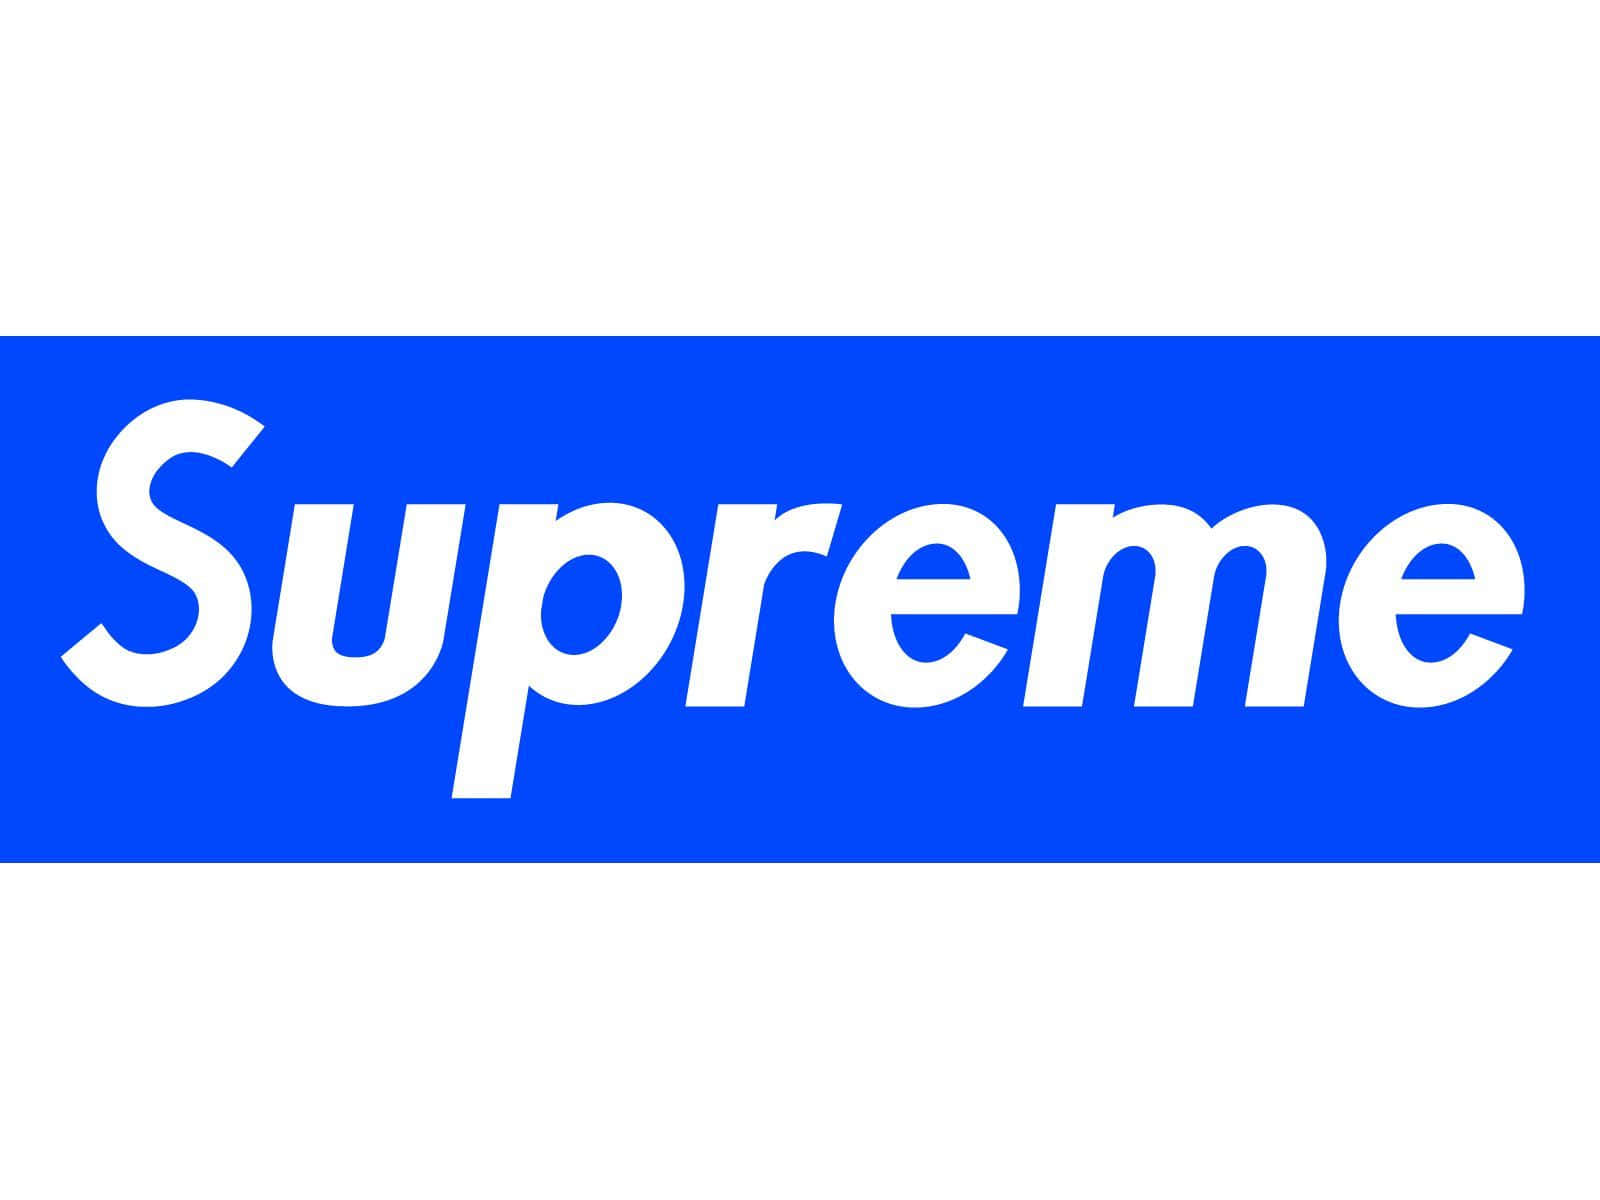 Supremt Logo Tapet - Viser det vigtigste logo med stolthed Wallpaper